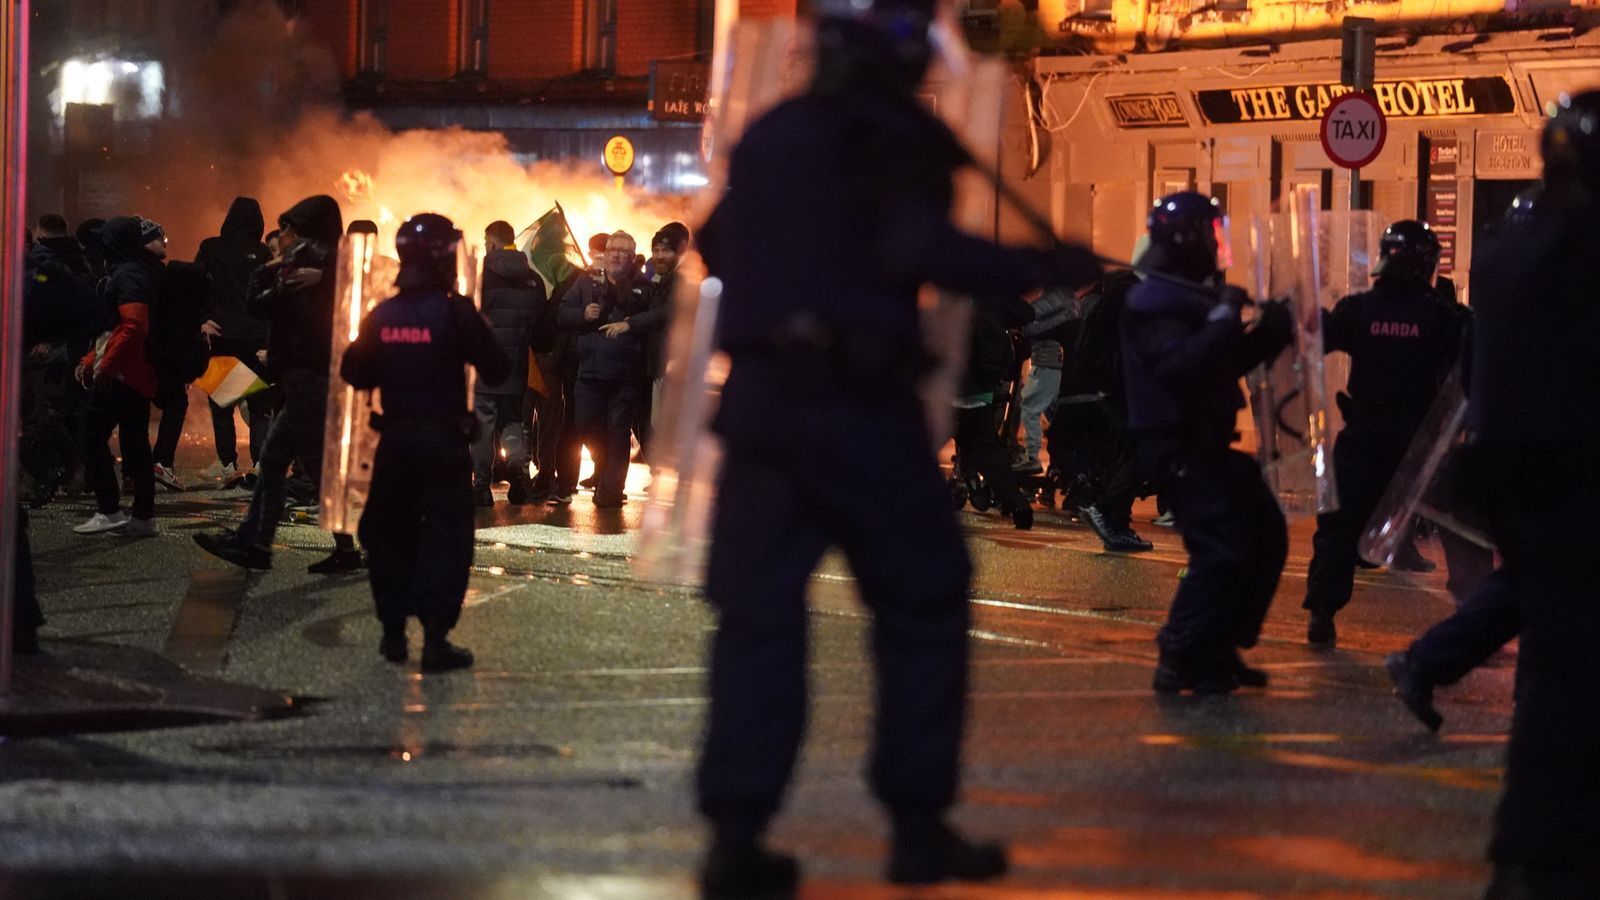 В столице Ирландии иммигрант из Алжира напал с ножом на прохожих: в городе вспыхнули антиисламские протесты. Фото и видео